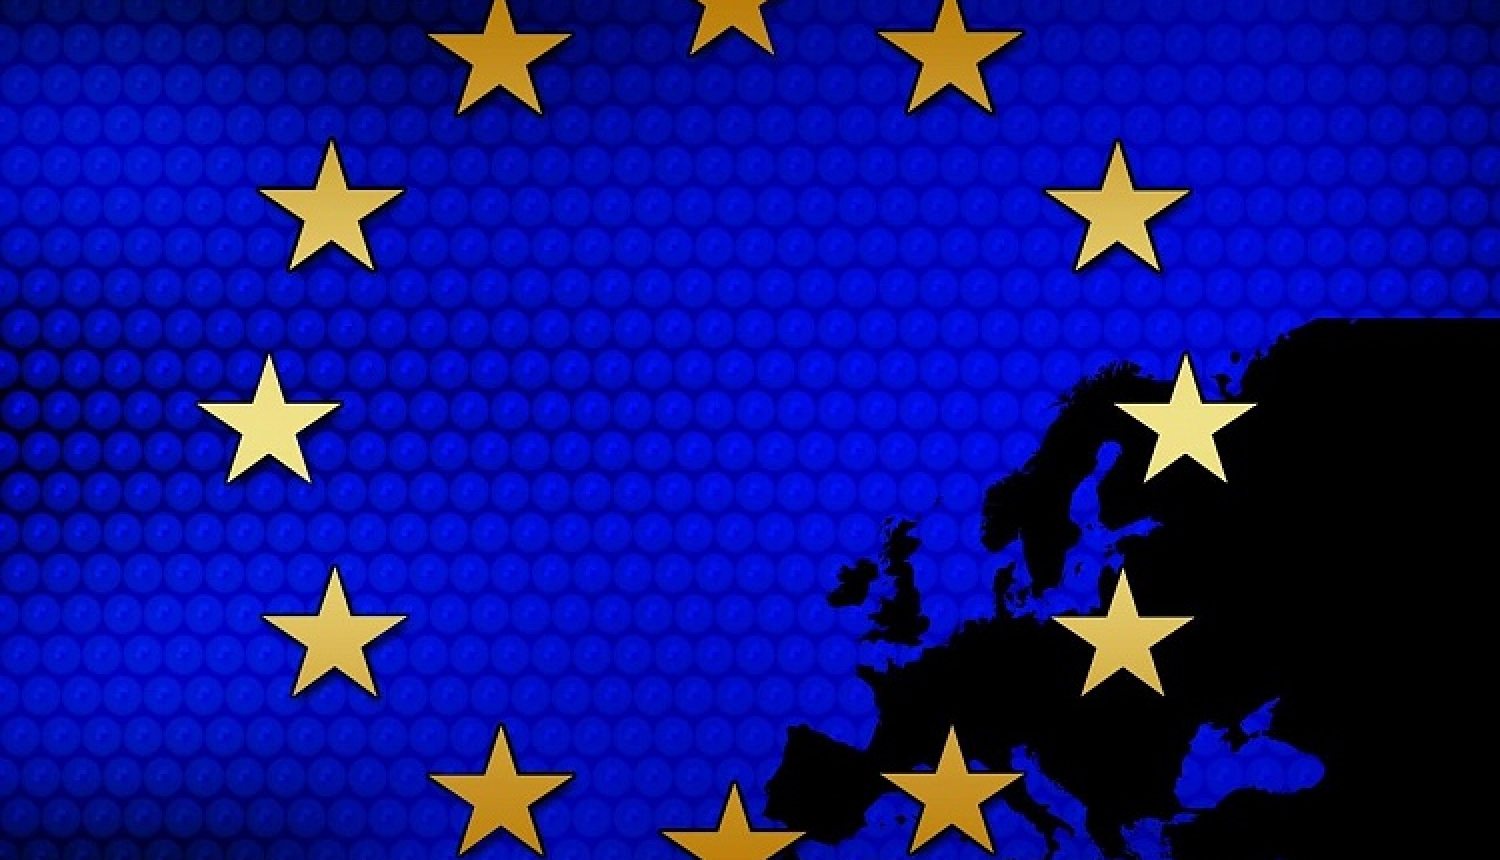 Publicēti ES programmas "Radošā Eiropa" Eiropas sadarbības projektu konkursa rezultāti